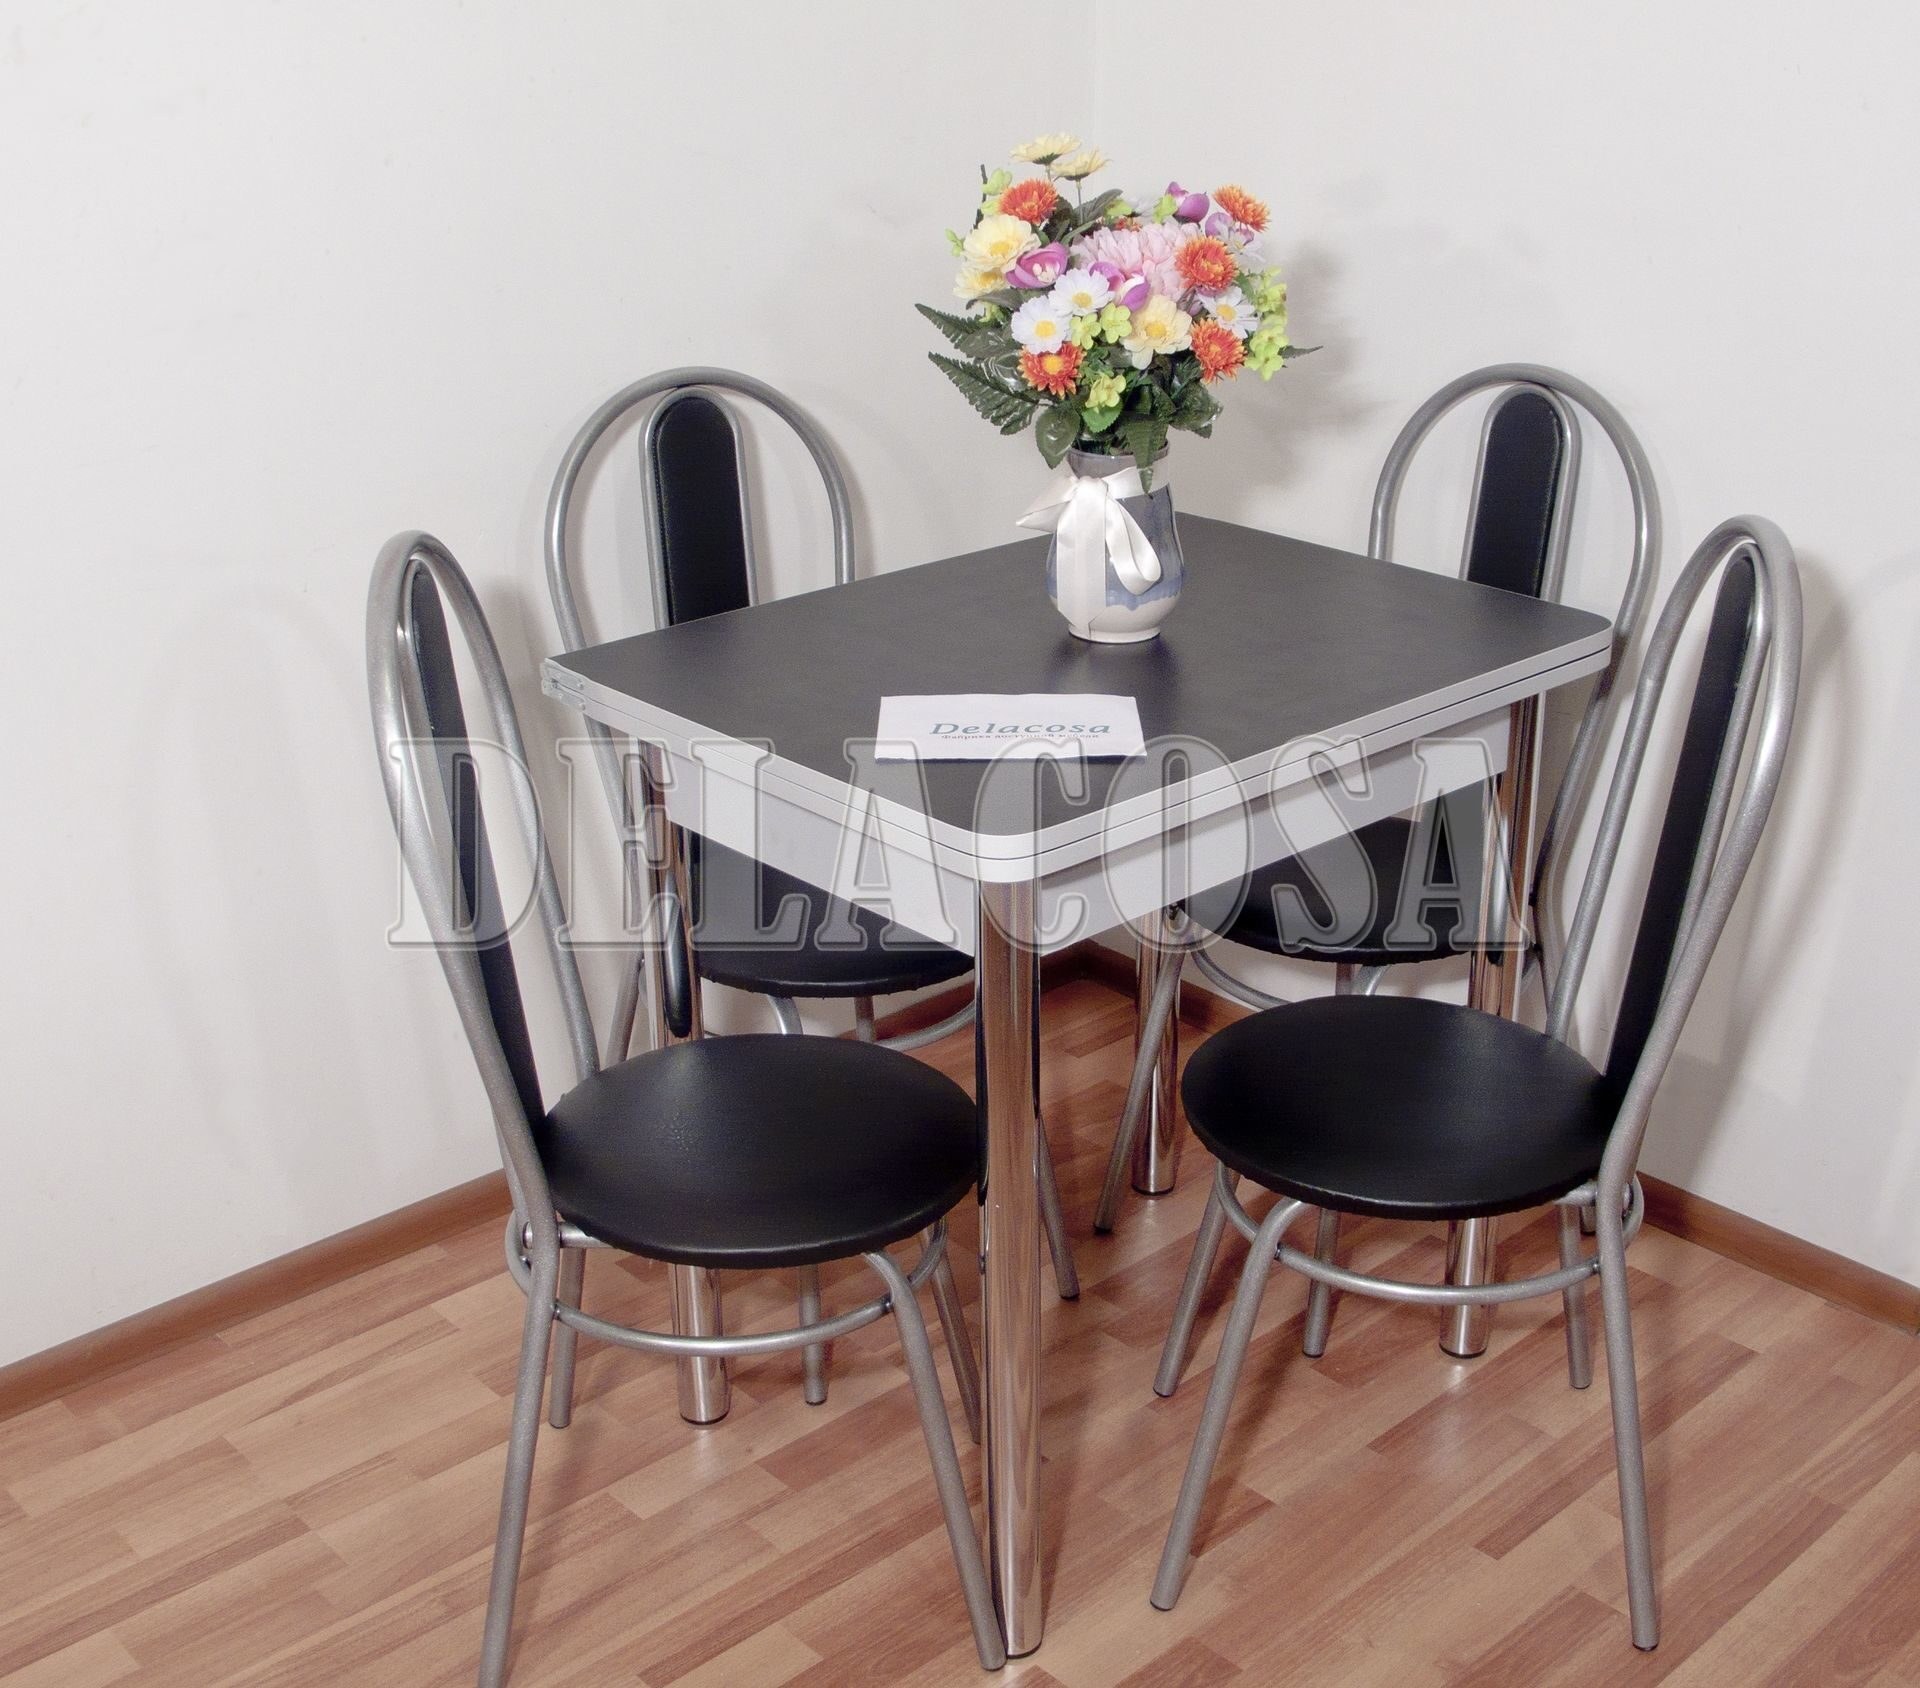 Кухонный стол 80 см. Стол Лион мини см-204.01.2. Обеденный комплект "стол Лион ПМ+стулья Кармен". Стол кухонный раскладной для маленькой кухни 60х80.